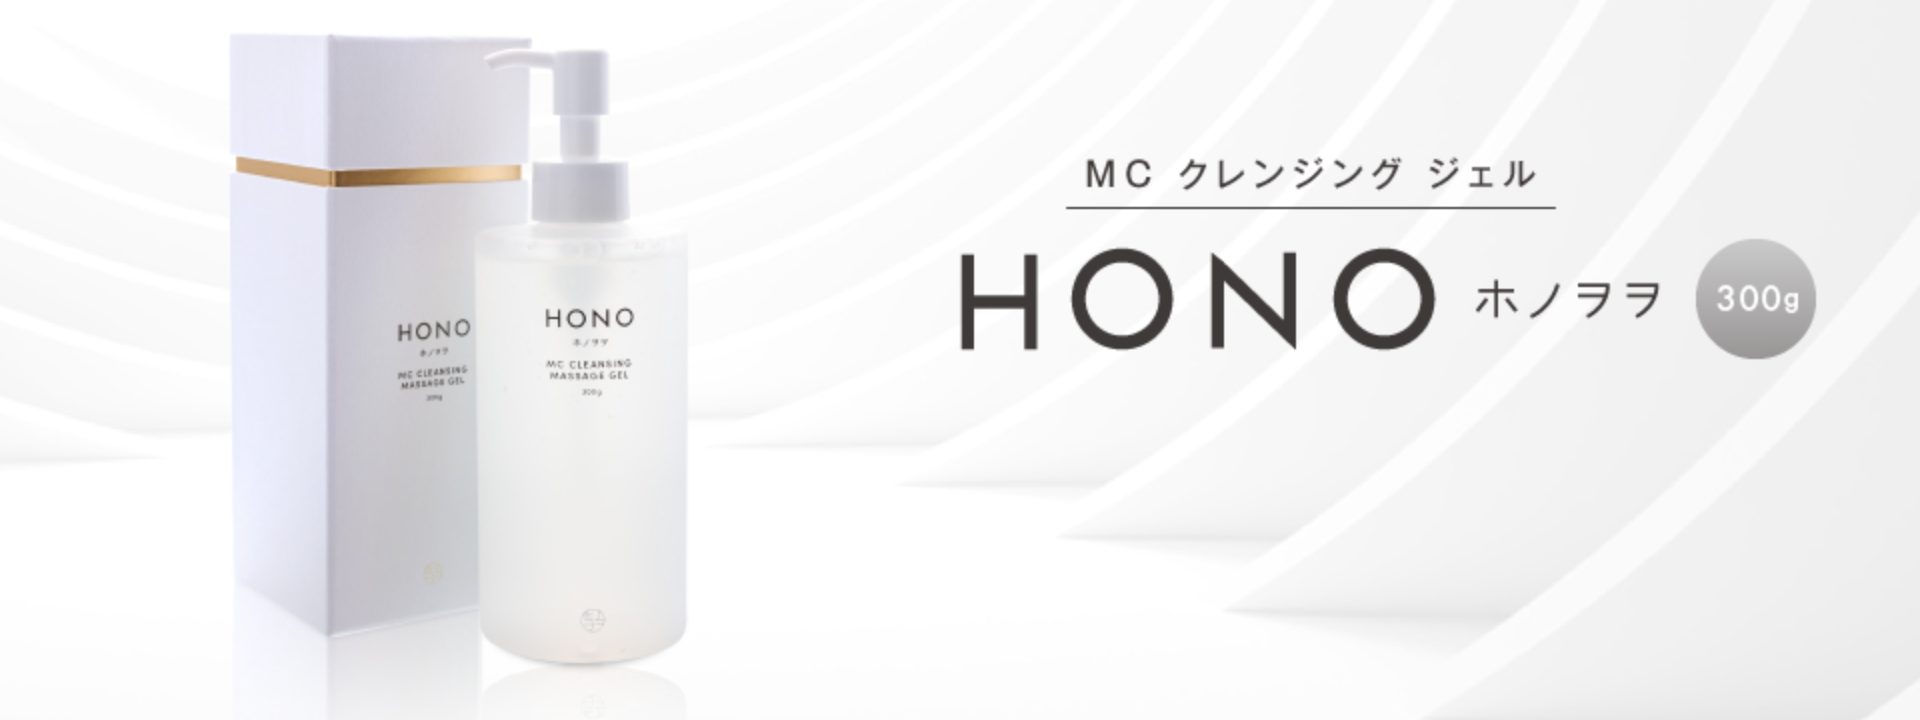 日本公式代理店 正規品 HONO 300g ホノヲヲ マッサージジェル MCクレンジングジェル